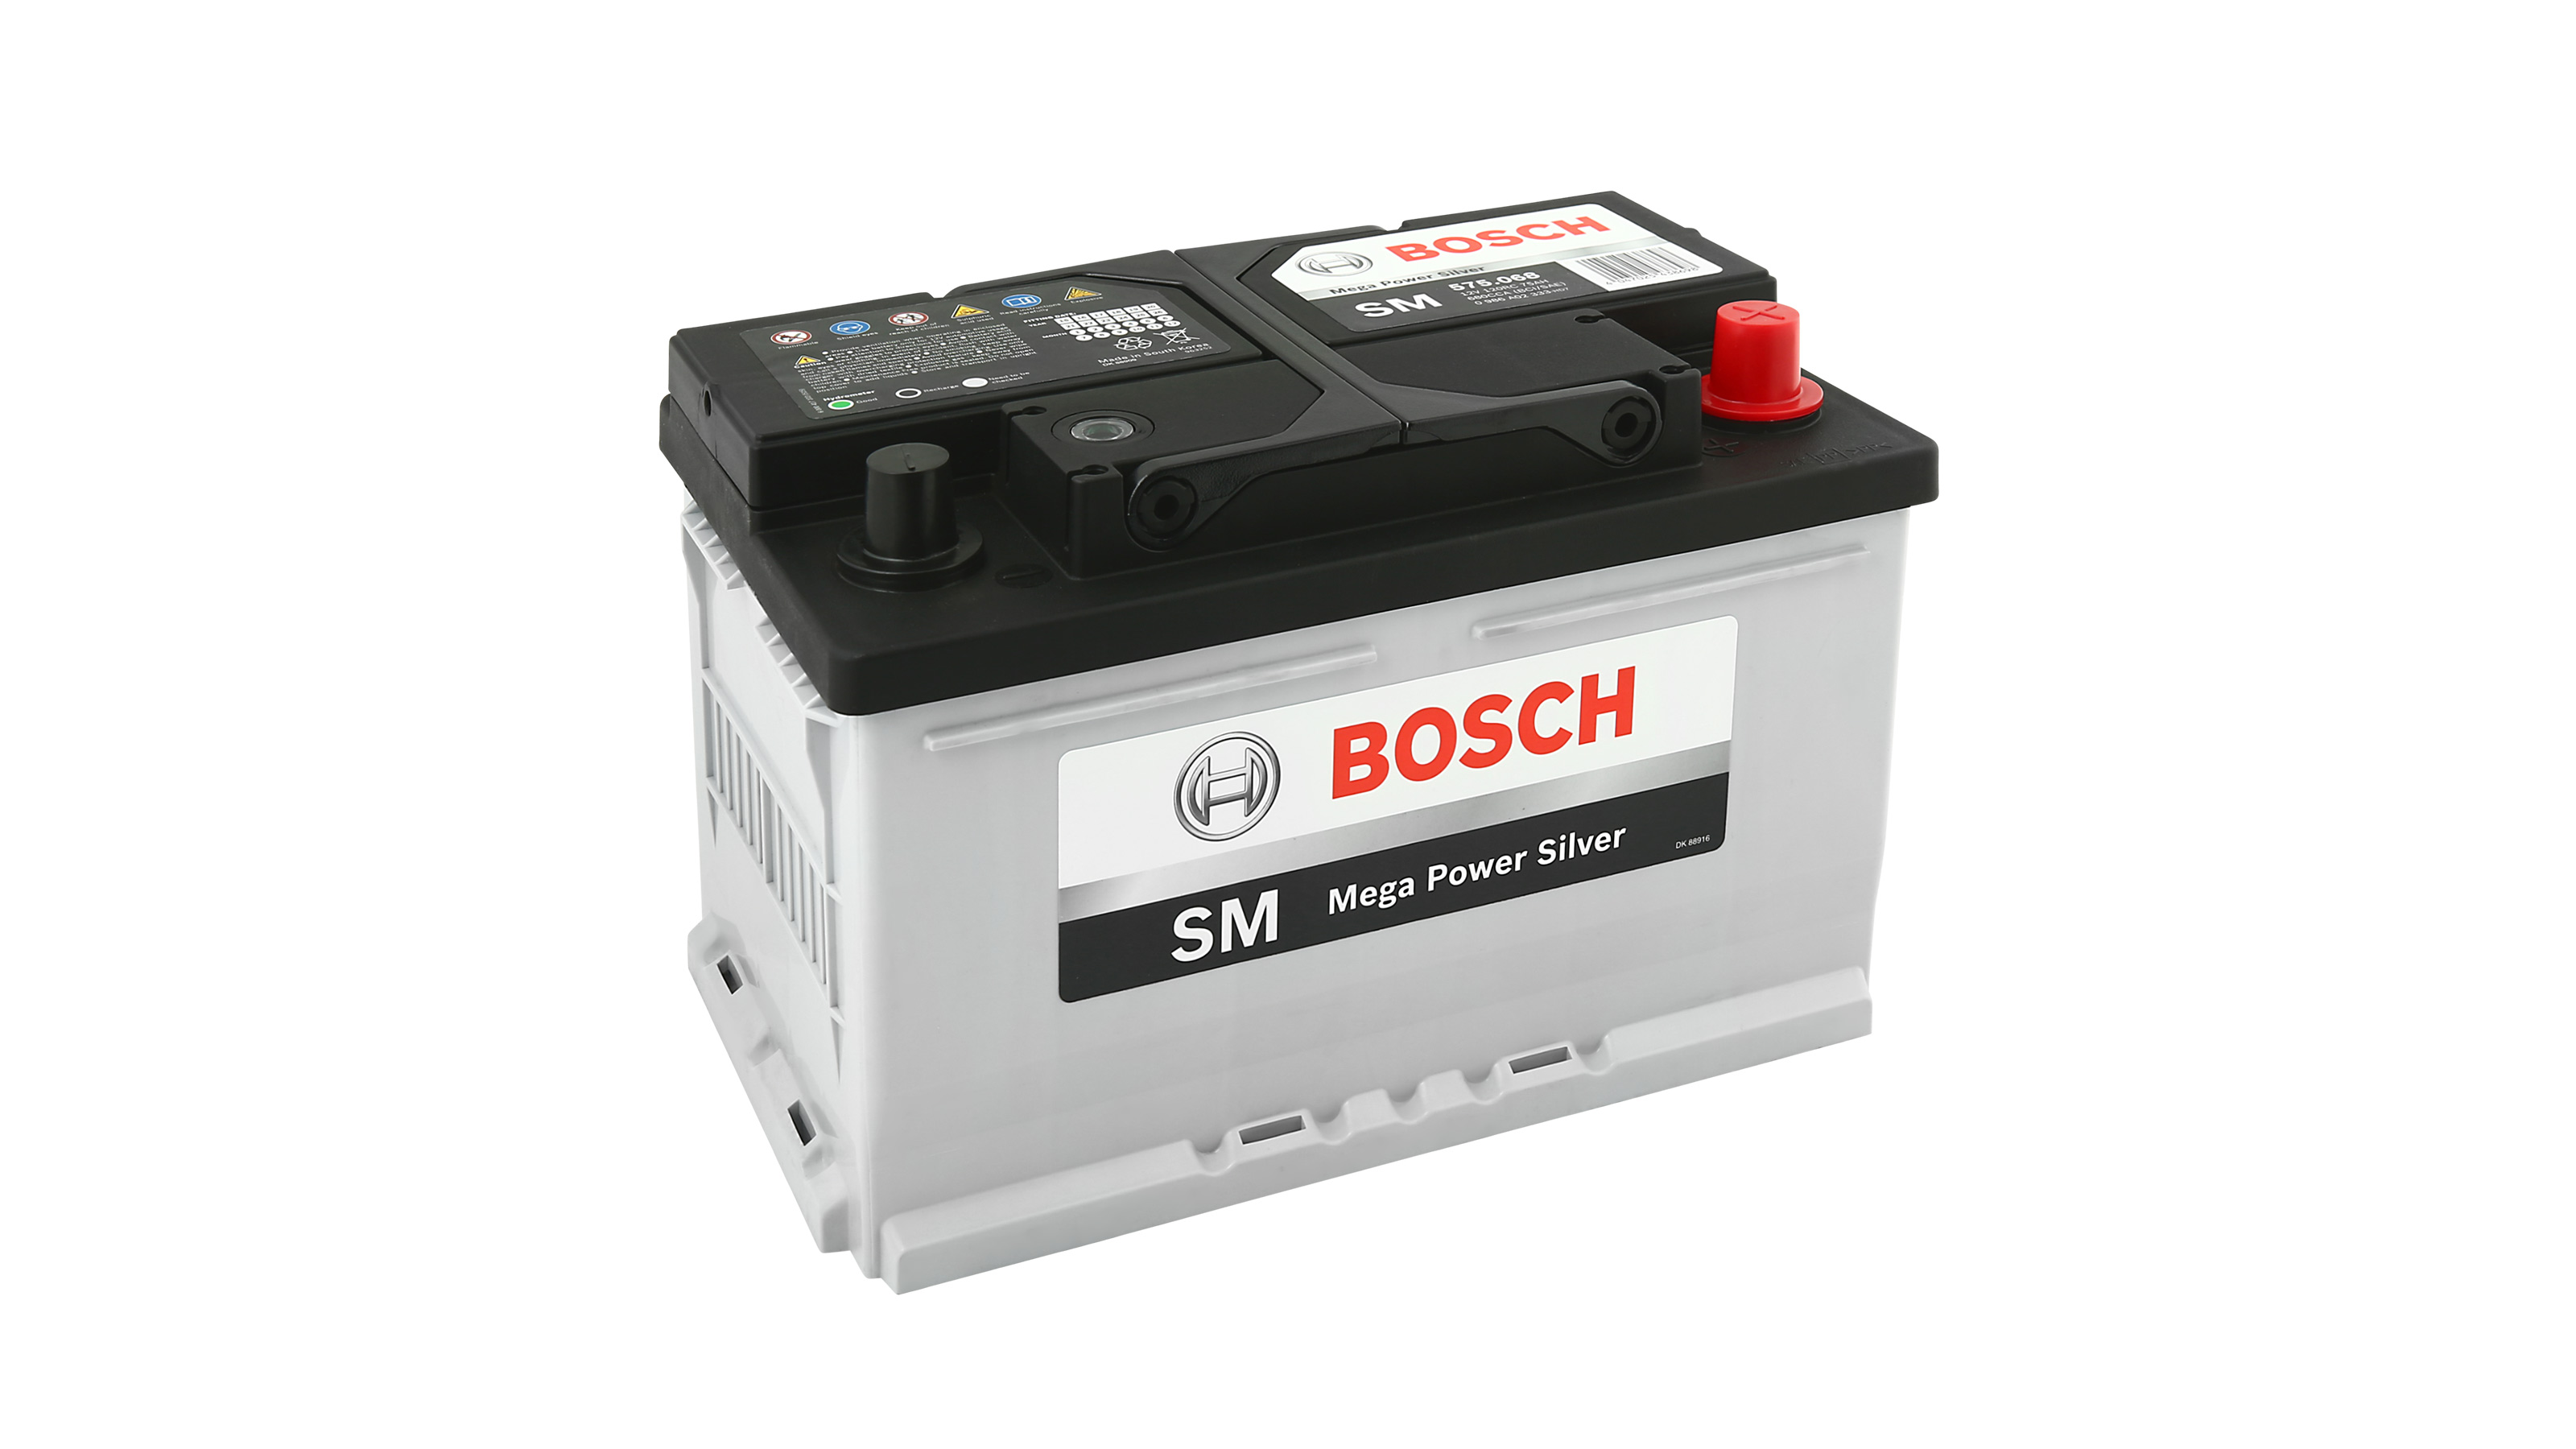 12v-bosch-battery-cheapest-offers-save-44-jlcatj-gob-mx